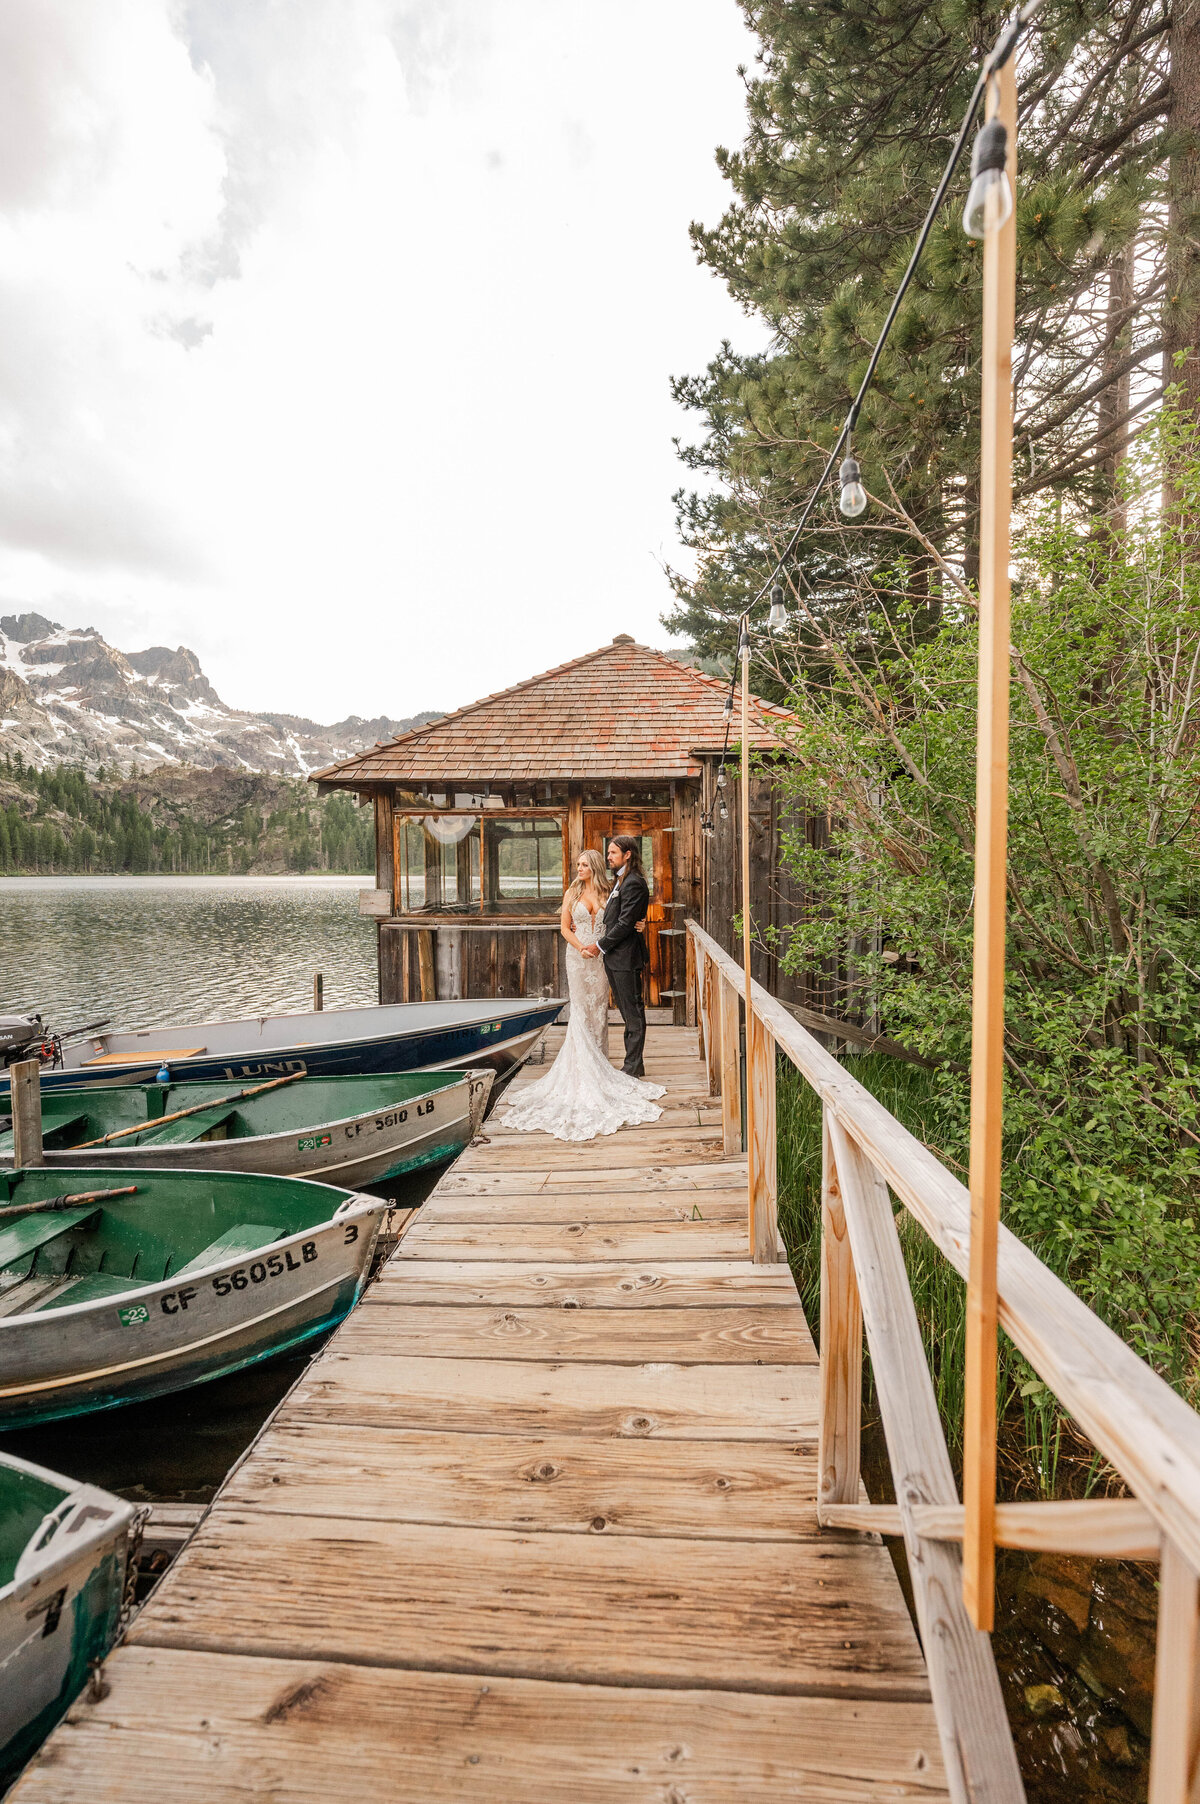 Reno Elopement Photographer, Reno Elopement photographer, elopement photography near me, wedding photography near me, Lake Tahoe wedding photography